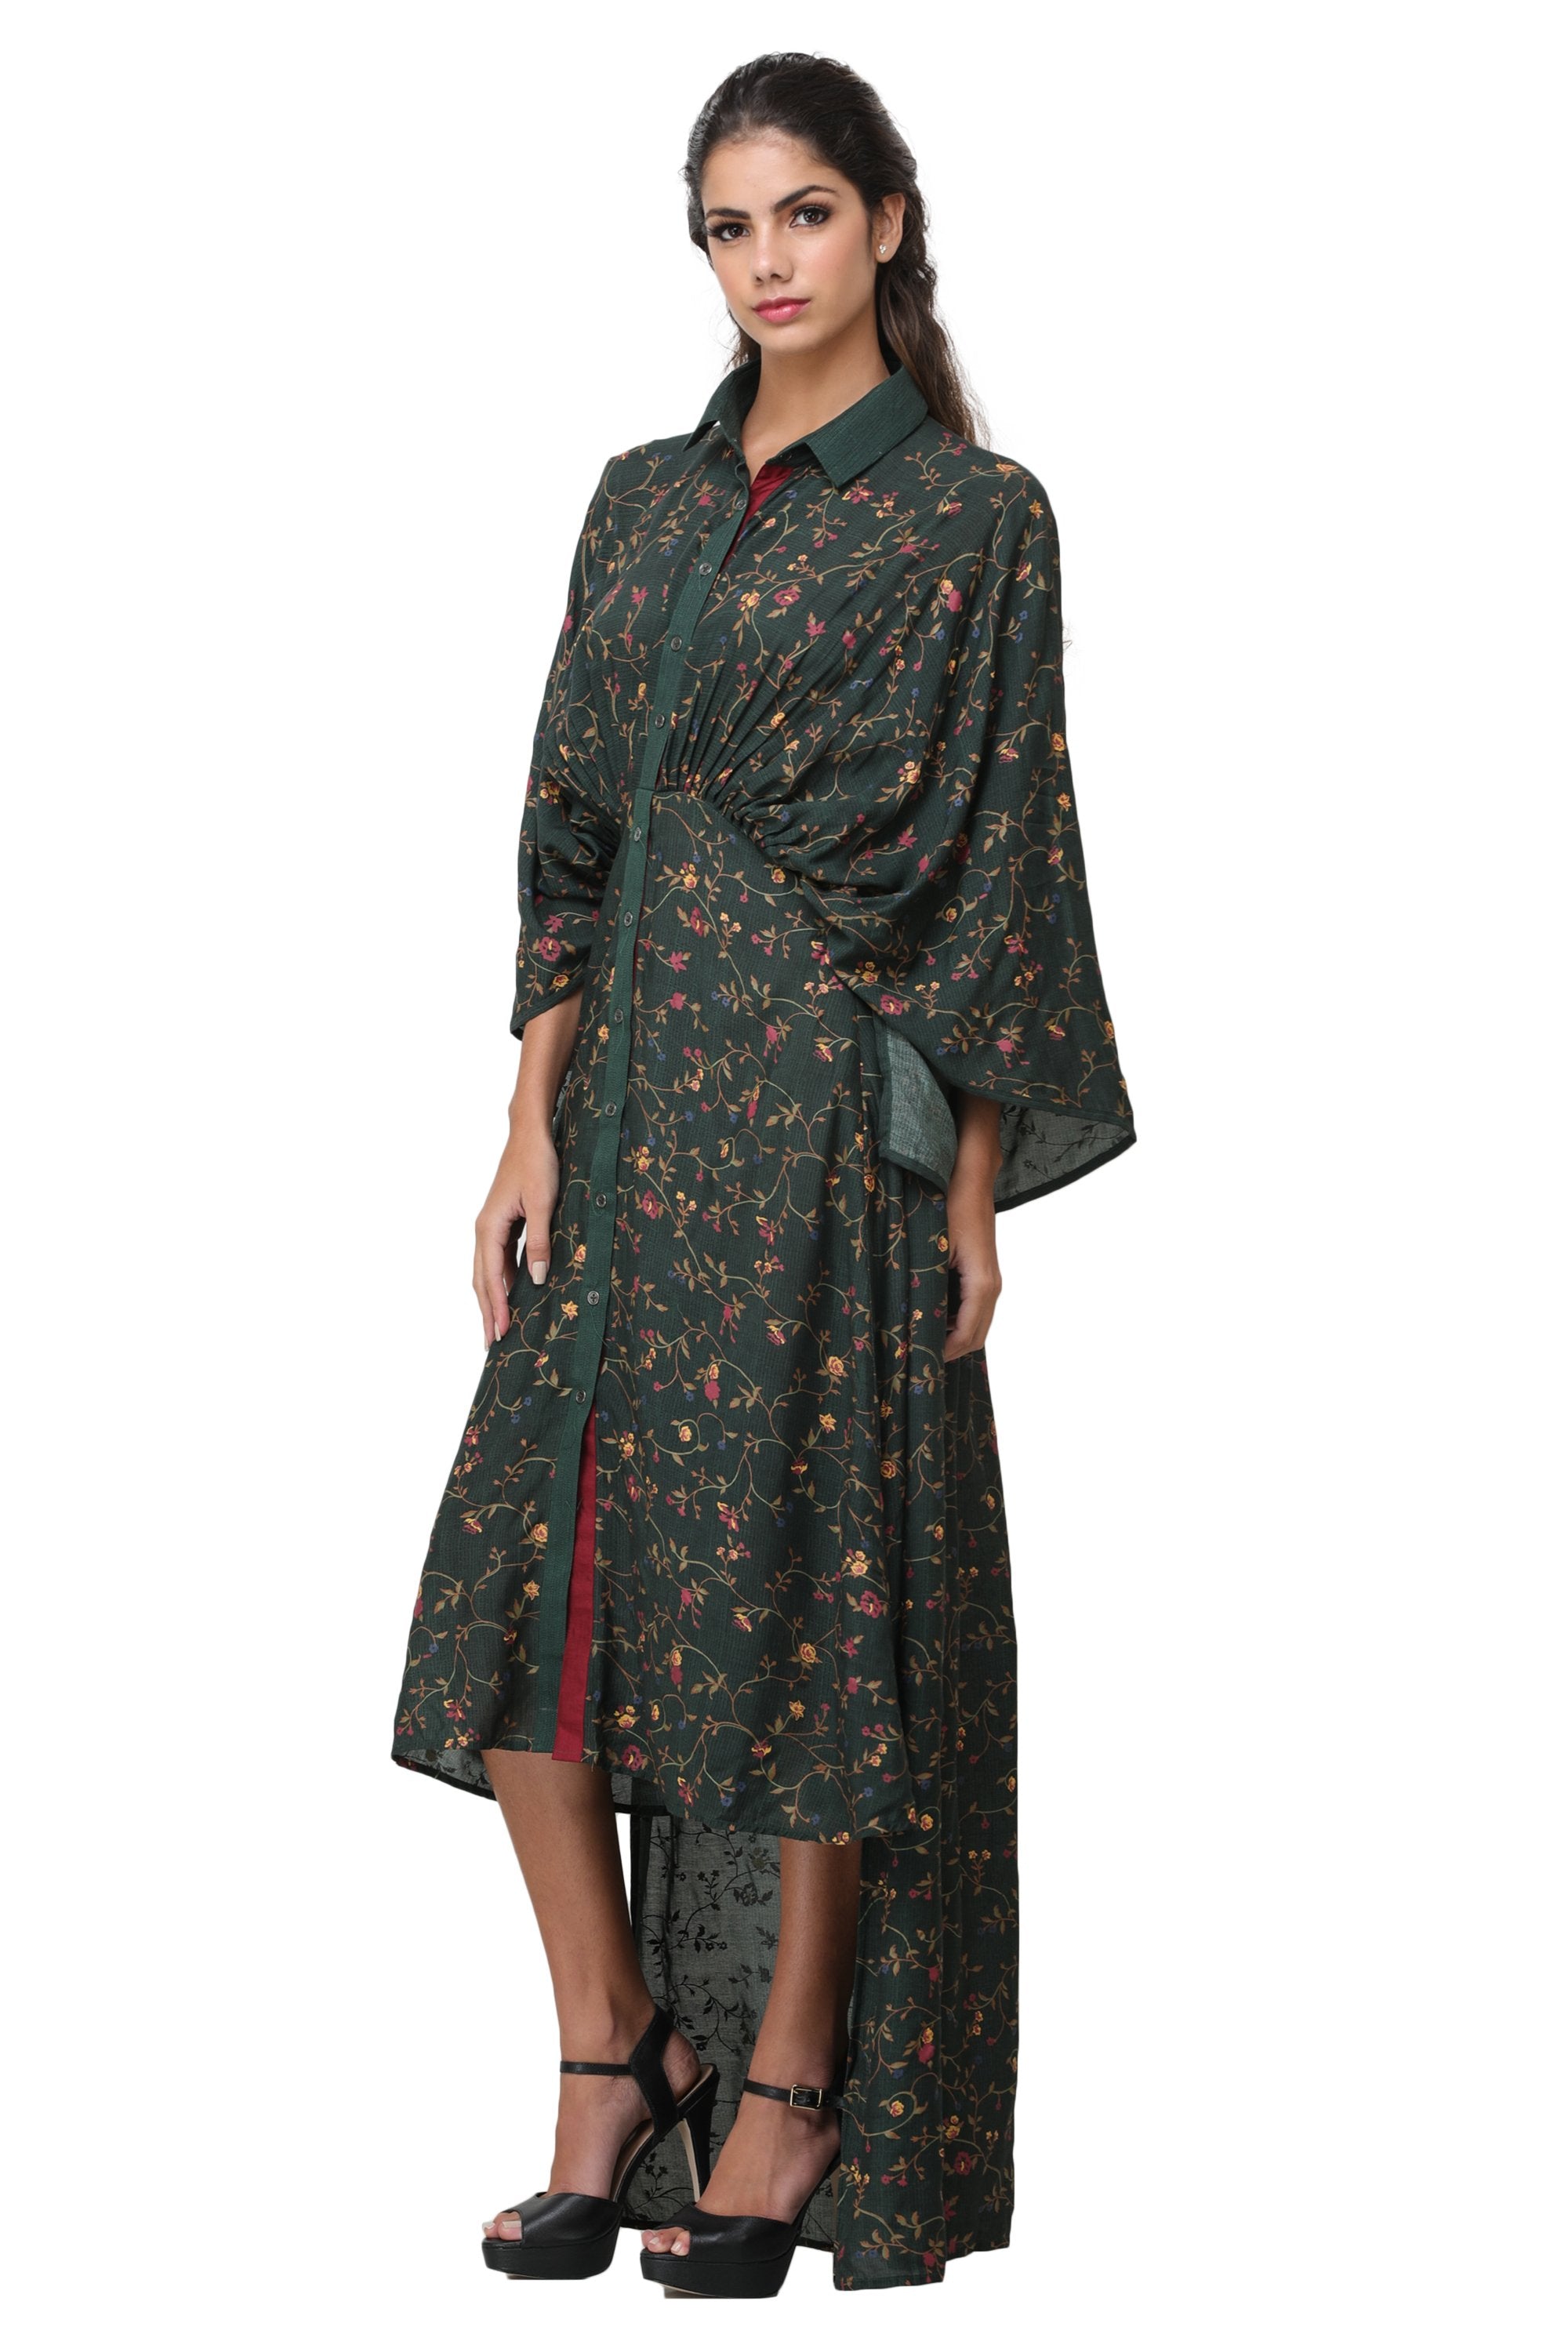 Pinnacle By Shruti Sancheti - Green Printed Kimono Dress